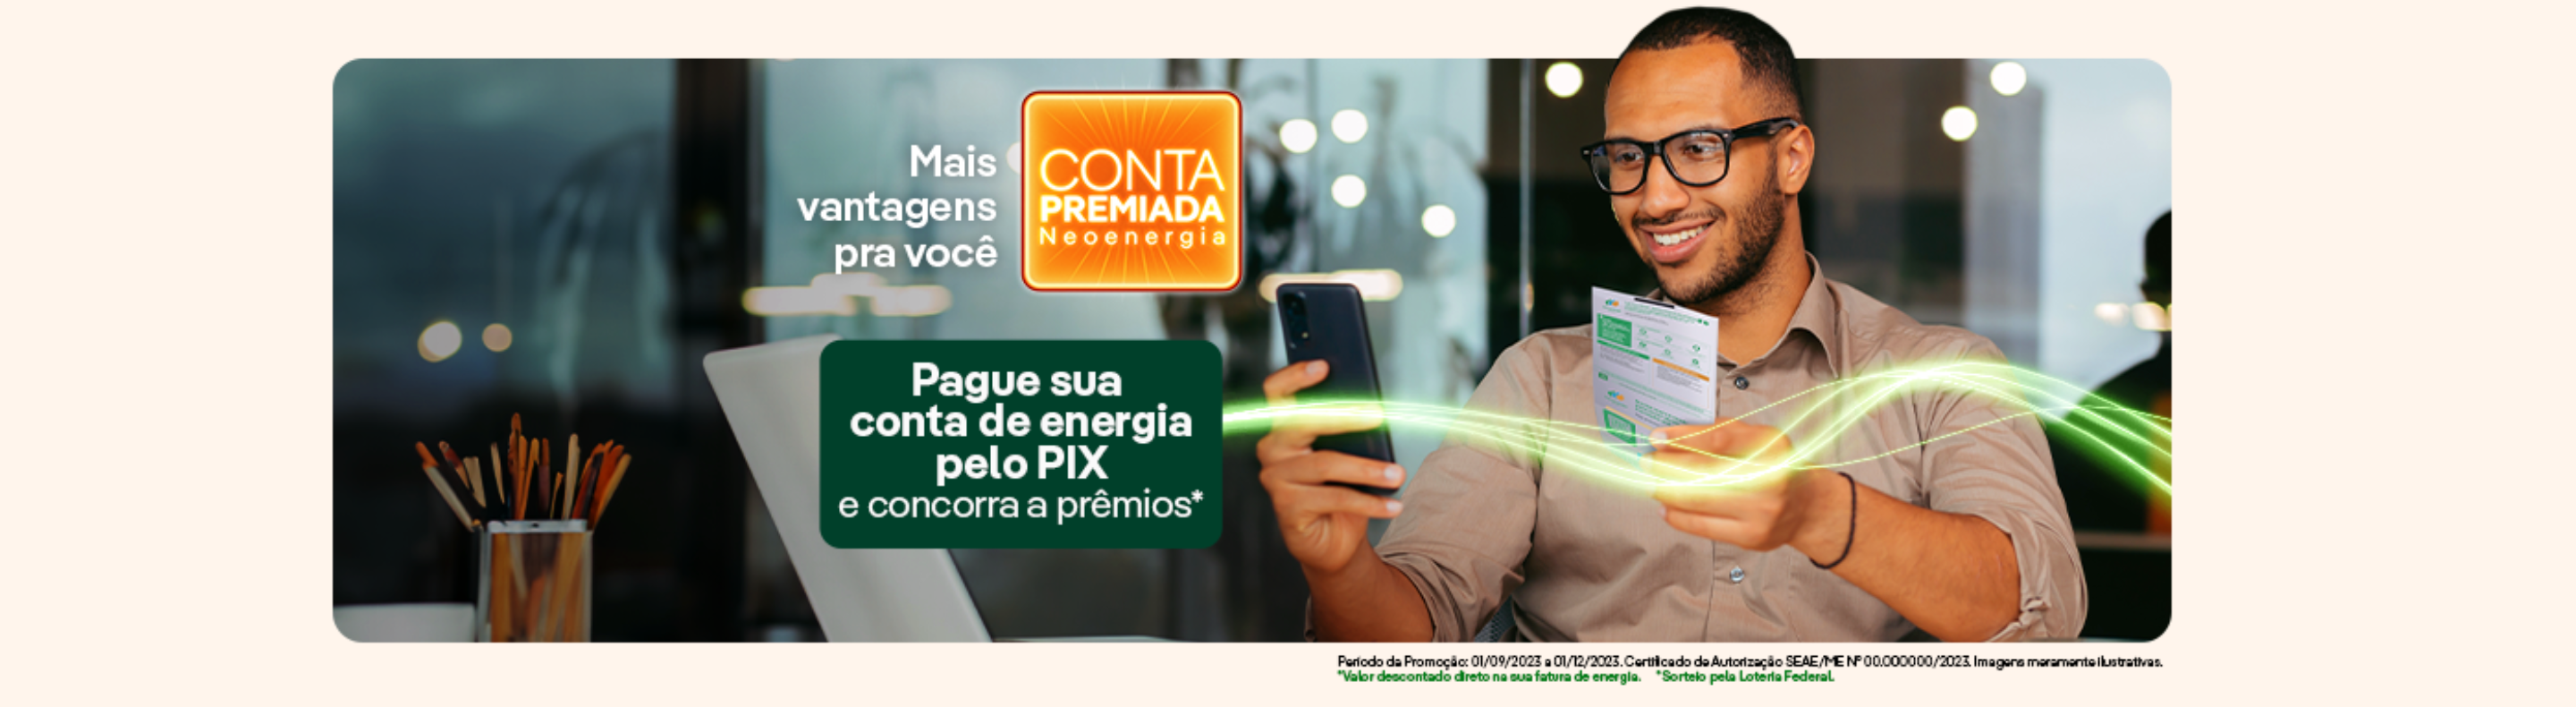 Banner da campanha Conta Premiada da Neoenergia em que homem segura fatura de energia e celular